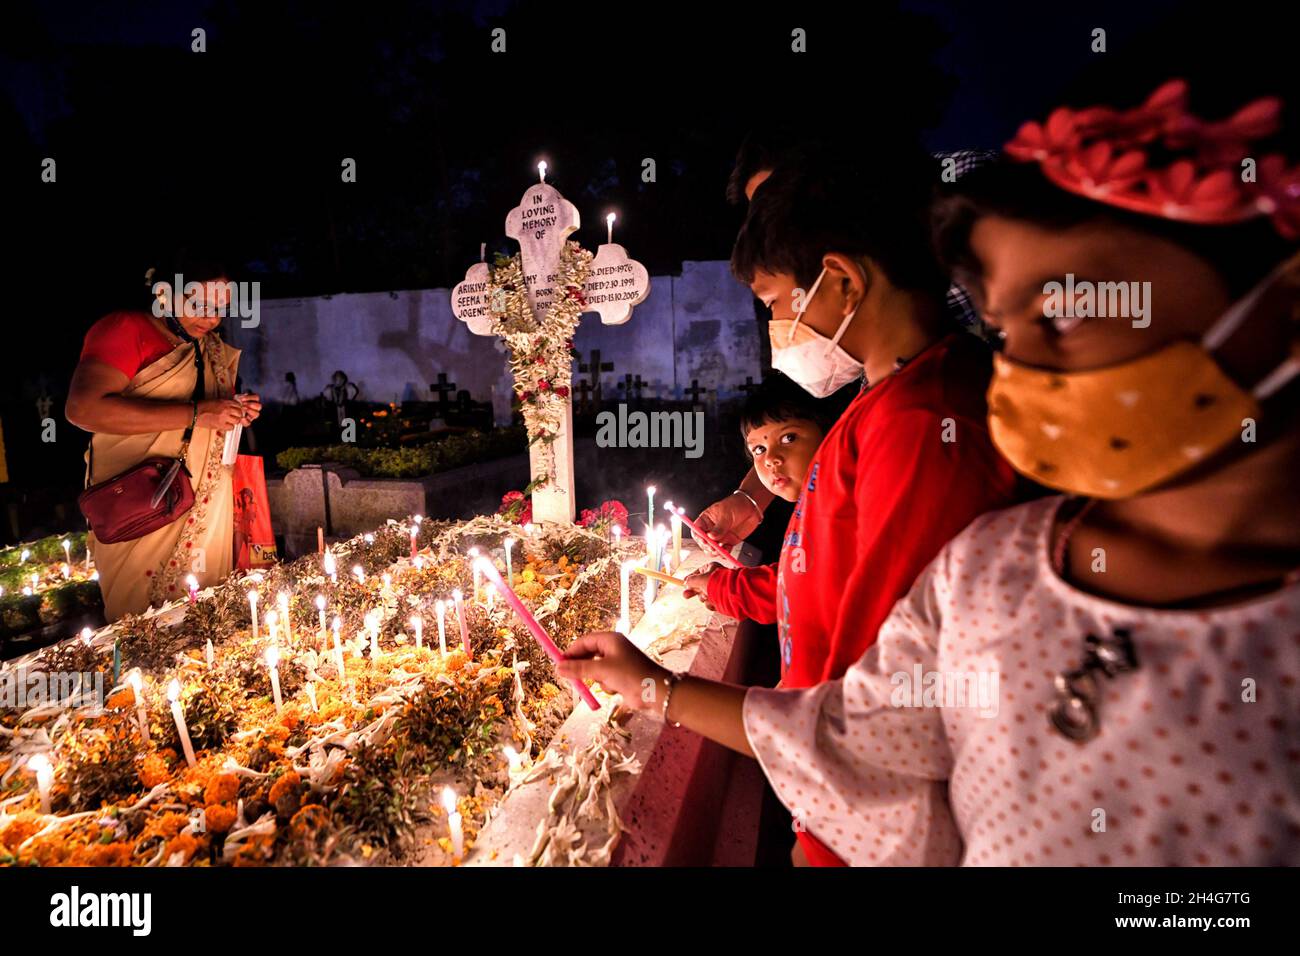 I bambini si accingono le candele accanto alla tomba del loro parente durante il giorno di tutte le anime a Kolkata.i devoti cristiani si radunano alle tombe dei loro cari nel cimitero con candele accese e fiori durante il giorno di tutte le anime. Un giorno in cui i cristiani ricordano i loro amici e parenti, che sono passati via. Ciò deriva da un'antica credenza che le anime dei morti ritorneranno, in questo giorno particolare, ad avere un pasto con la loro famiglia e amici. Le candele sono illuminate per guidare le anime alla loro casa per il pasto. (Foto di Avishek Das/SOPA Images/Sipa USA) Foto Stock